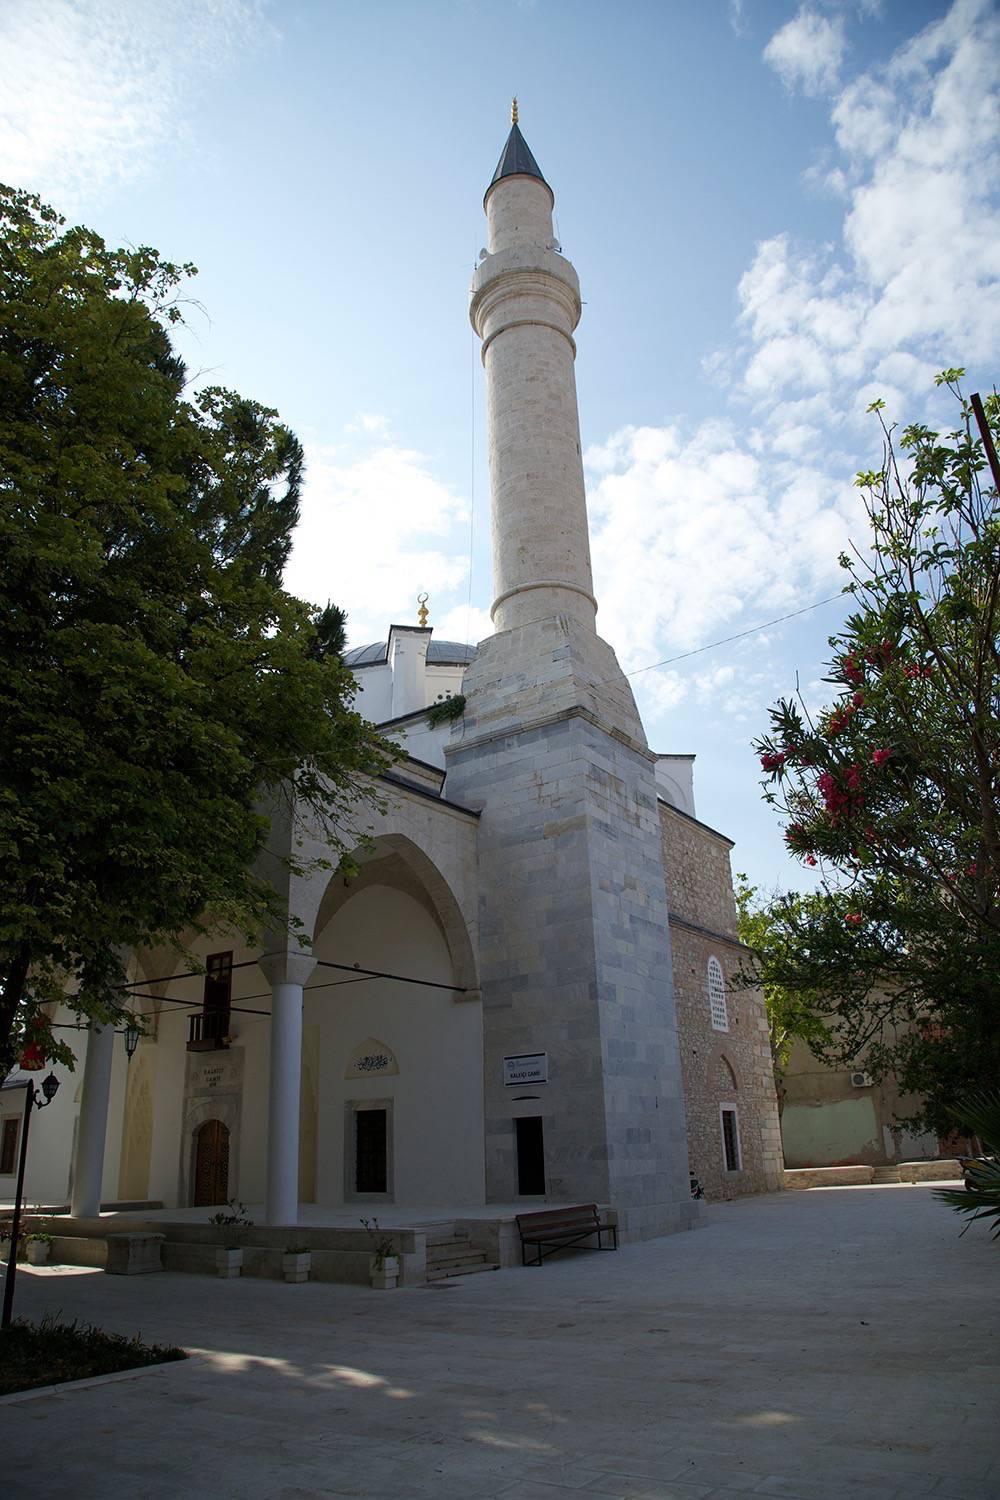 Exterior view of the minaret facade